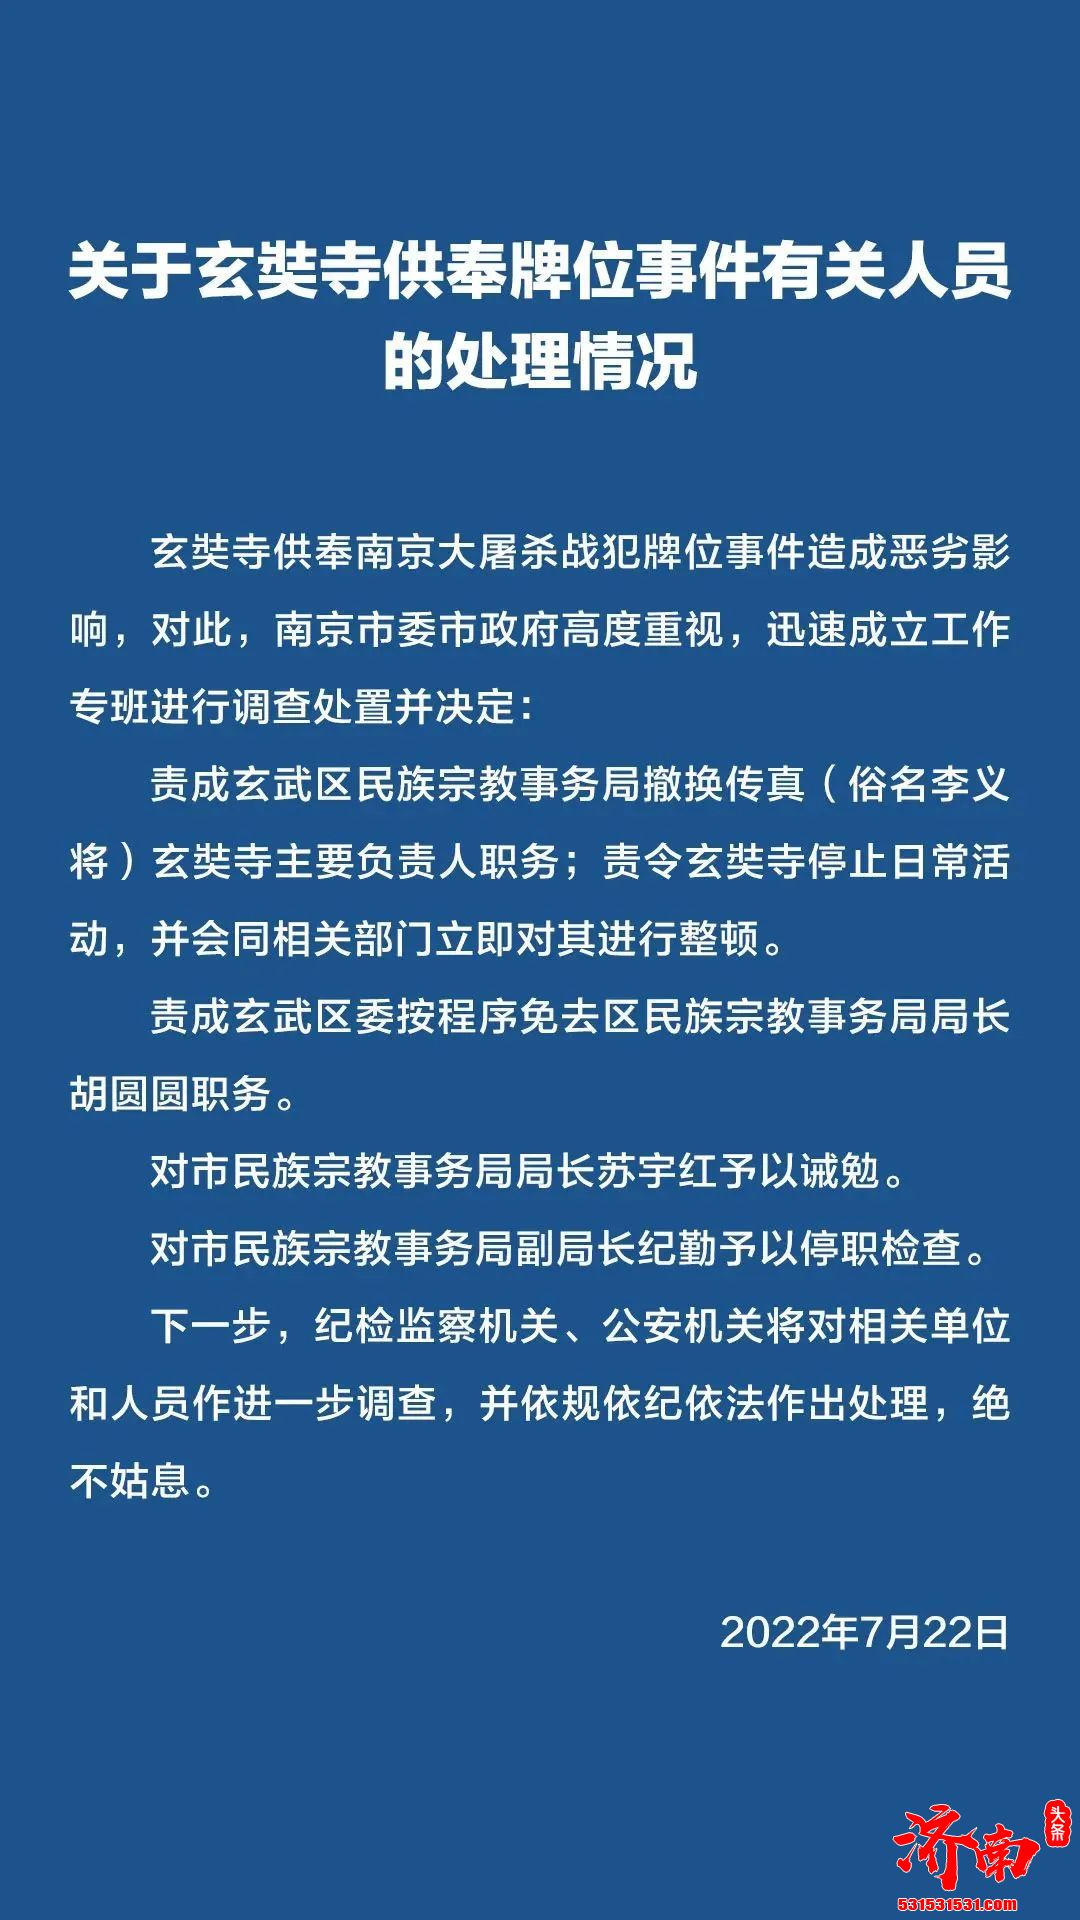 @南京发布发布关于玄奘寺供奉牌位事件有关人员的处理情况